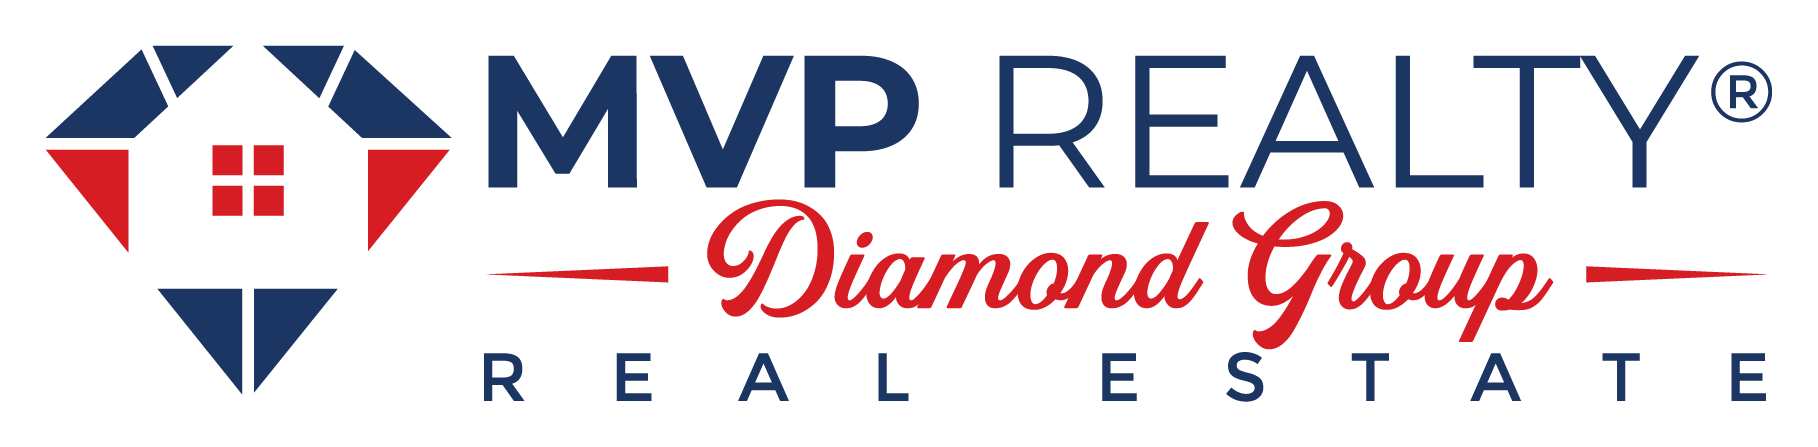 MVP Realty | Diamond Group